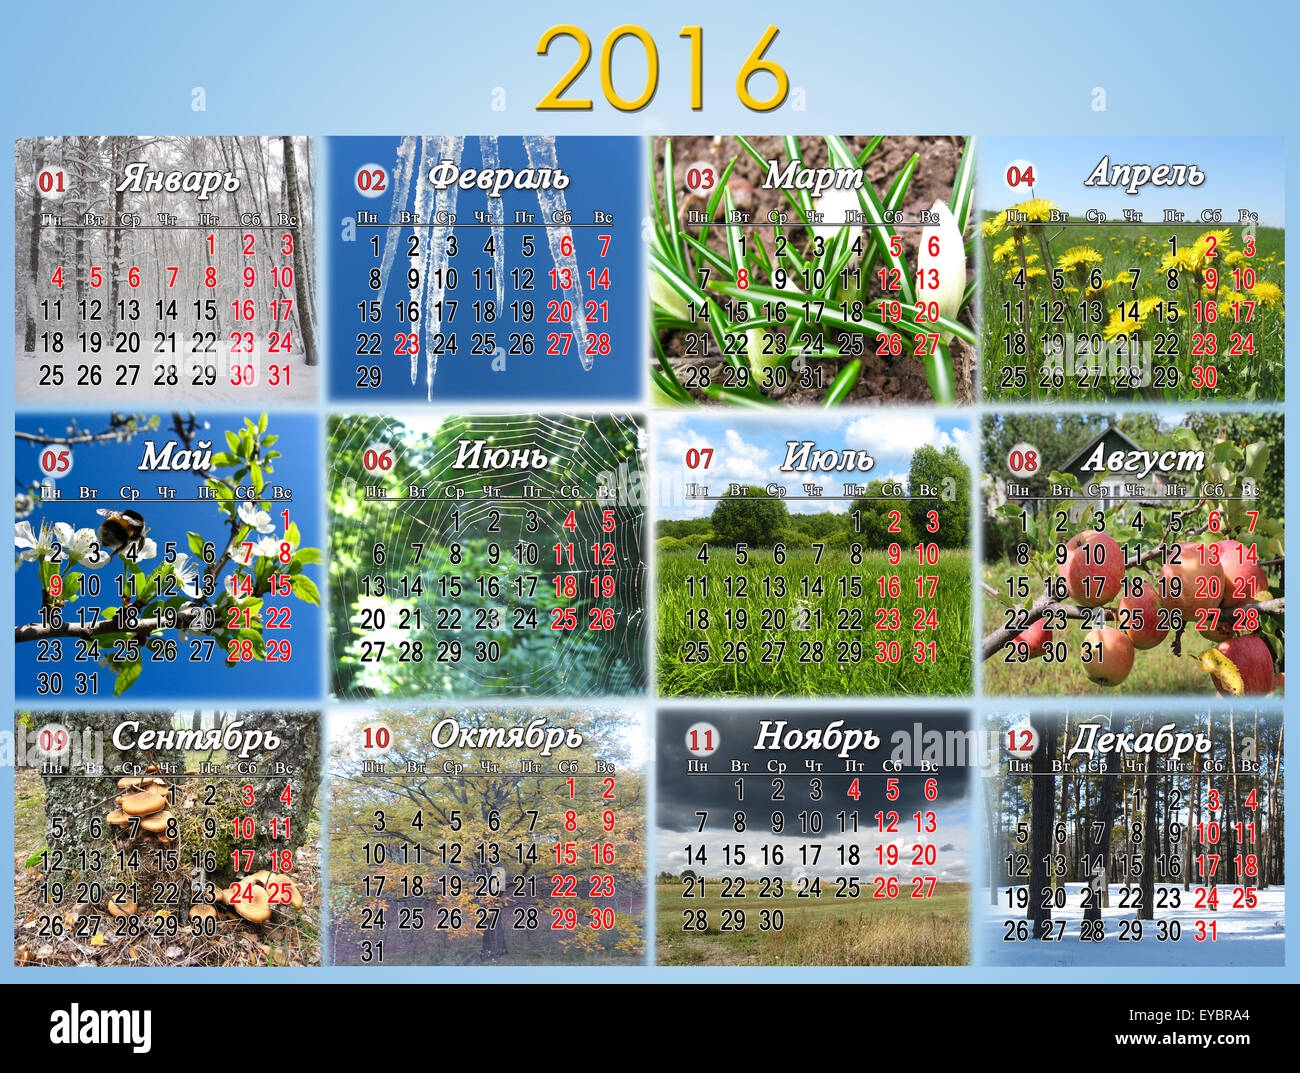 Kalender für das Jahr 2016 in russischer Sprache mit Foto der Natur für jeden Monat. Kalender mit russischen nationalen Feiertagen. Stockfoto